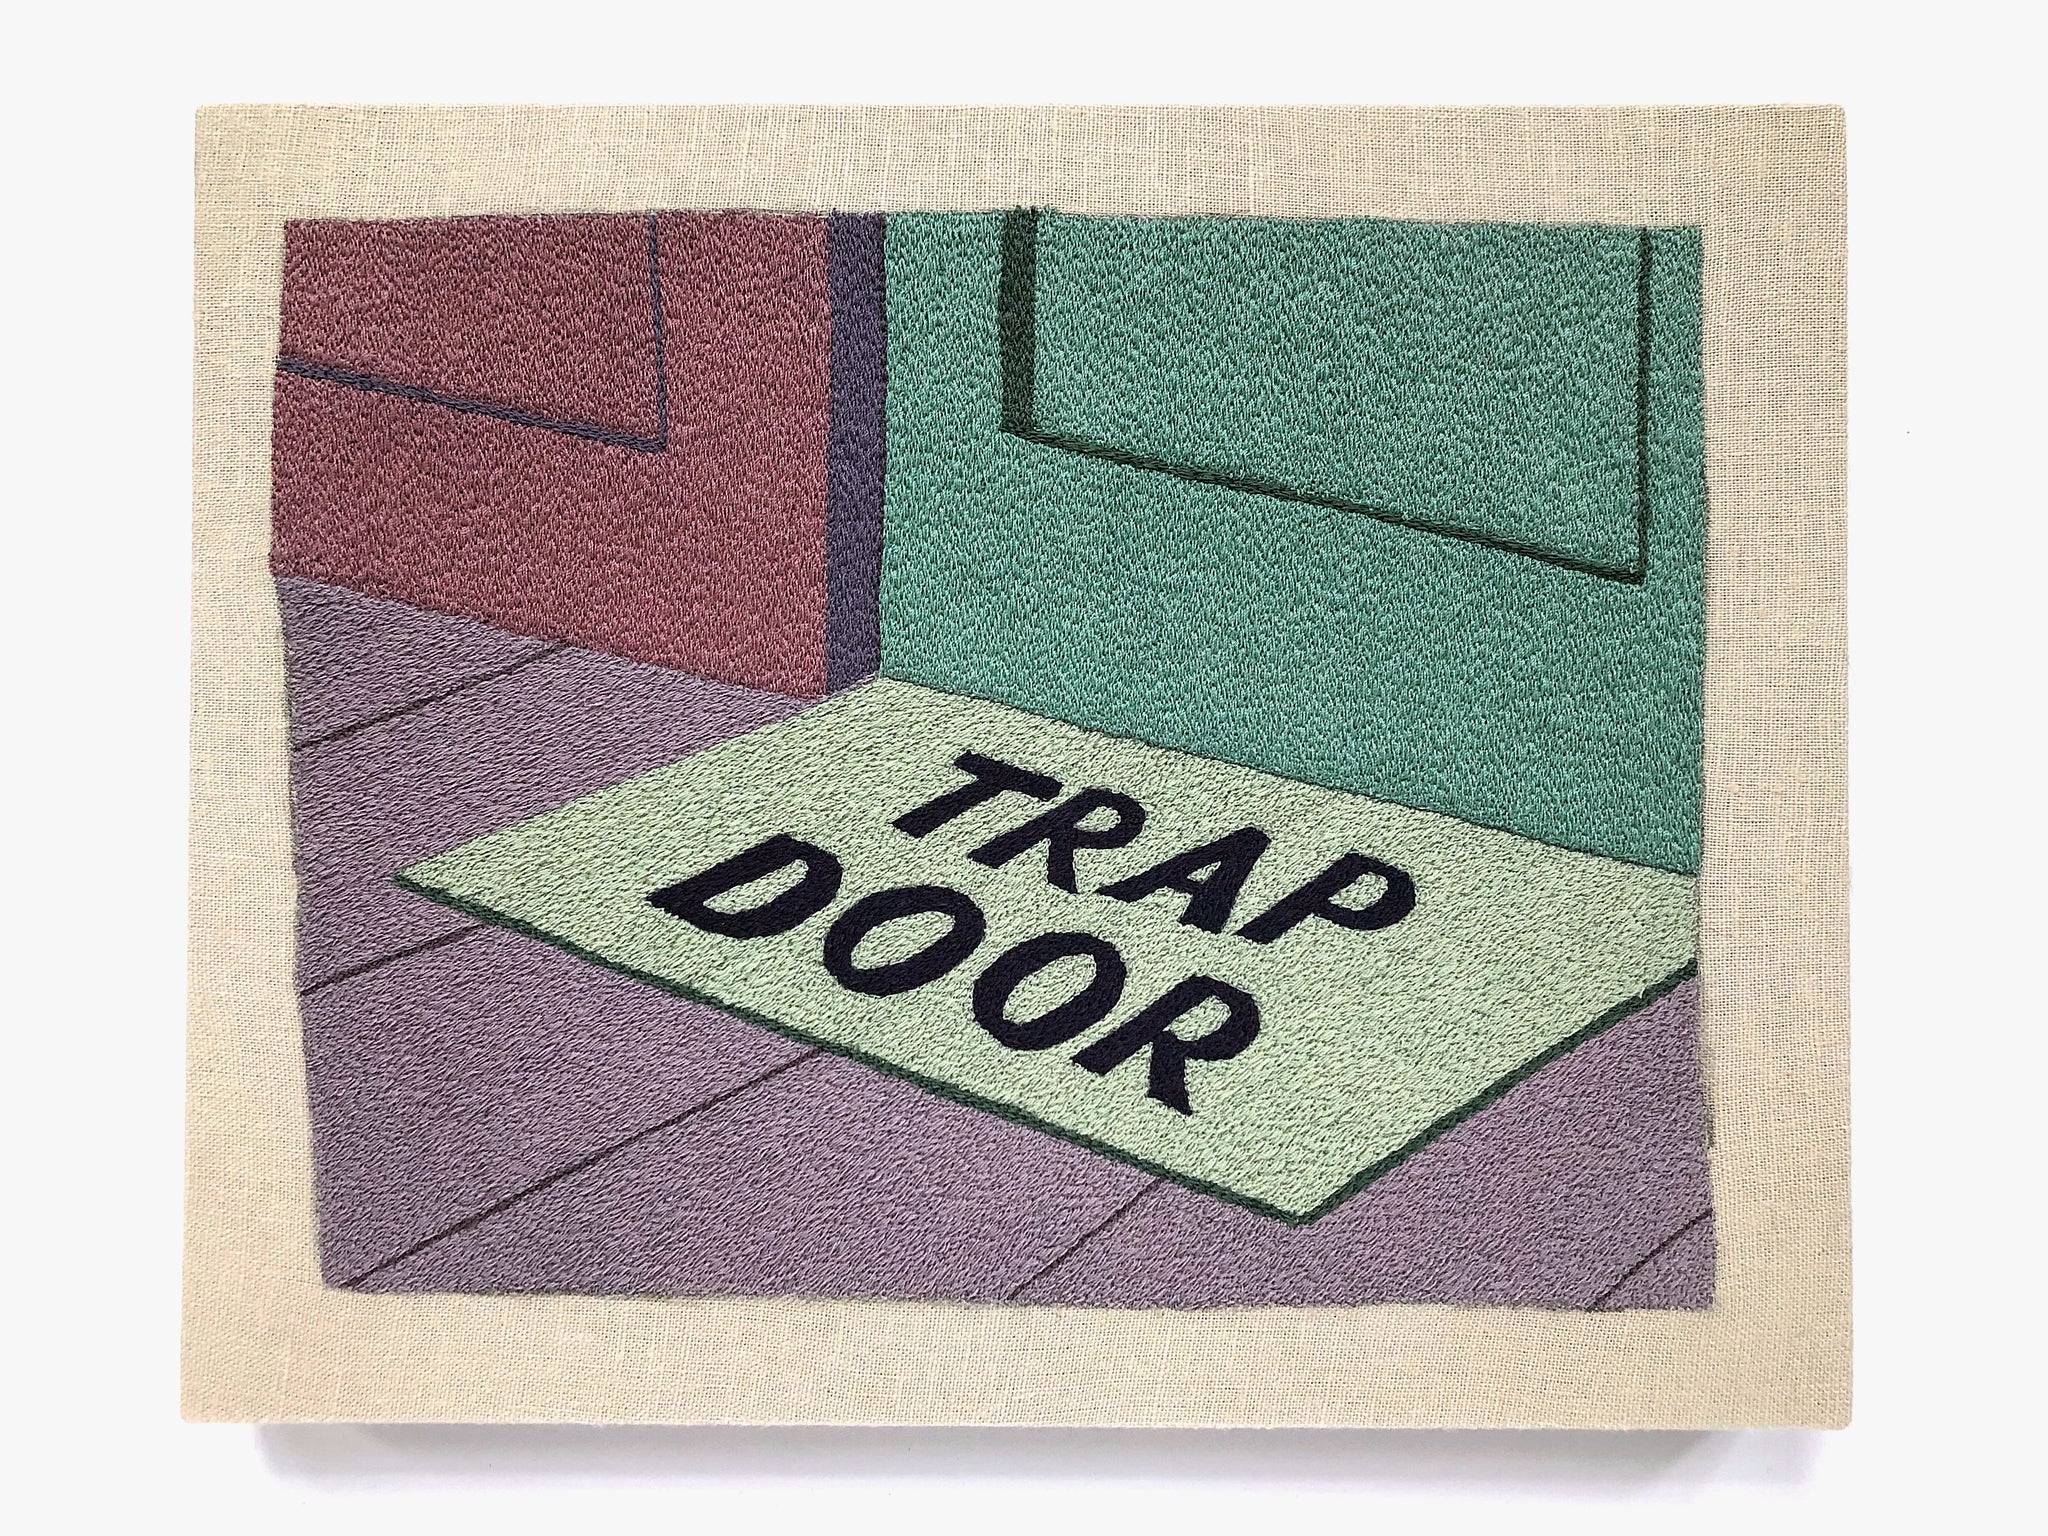 Varyer + Peter Frederiksen Trap Door Mat